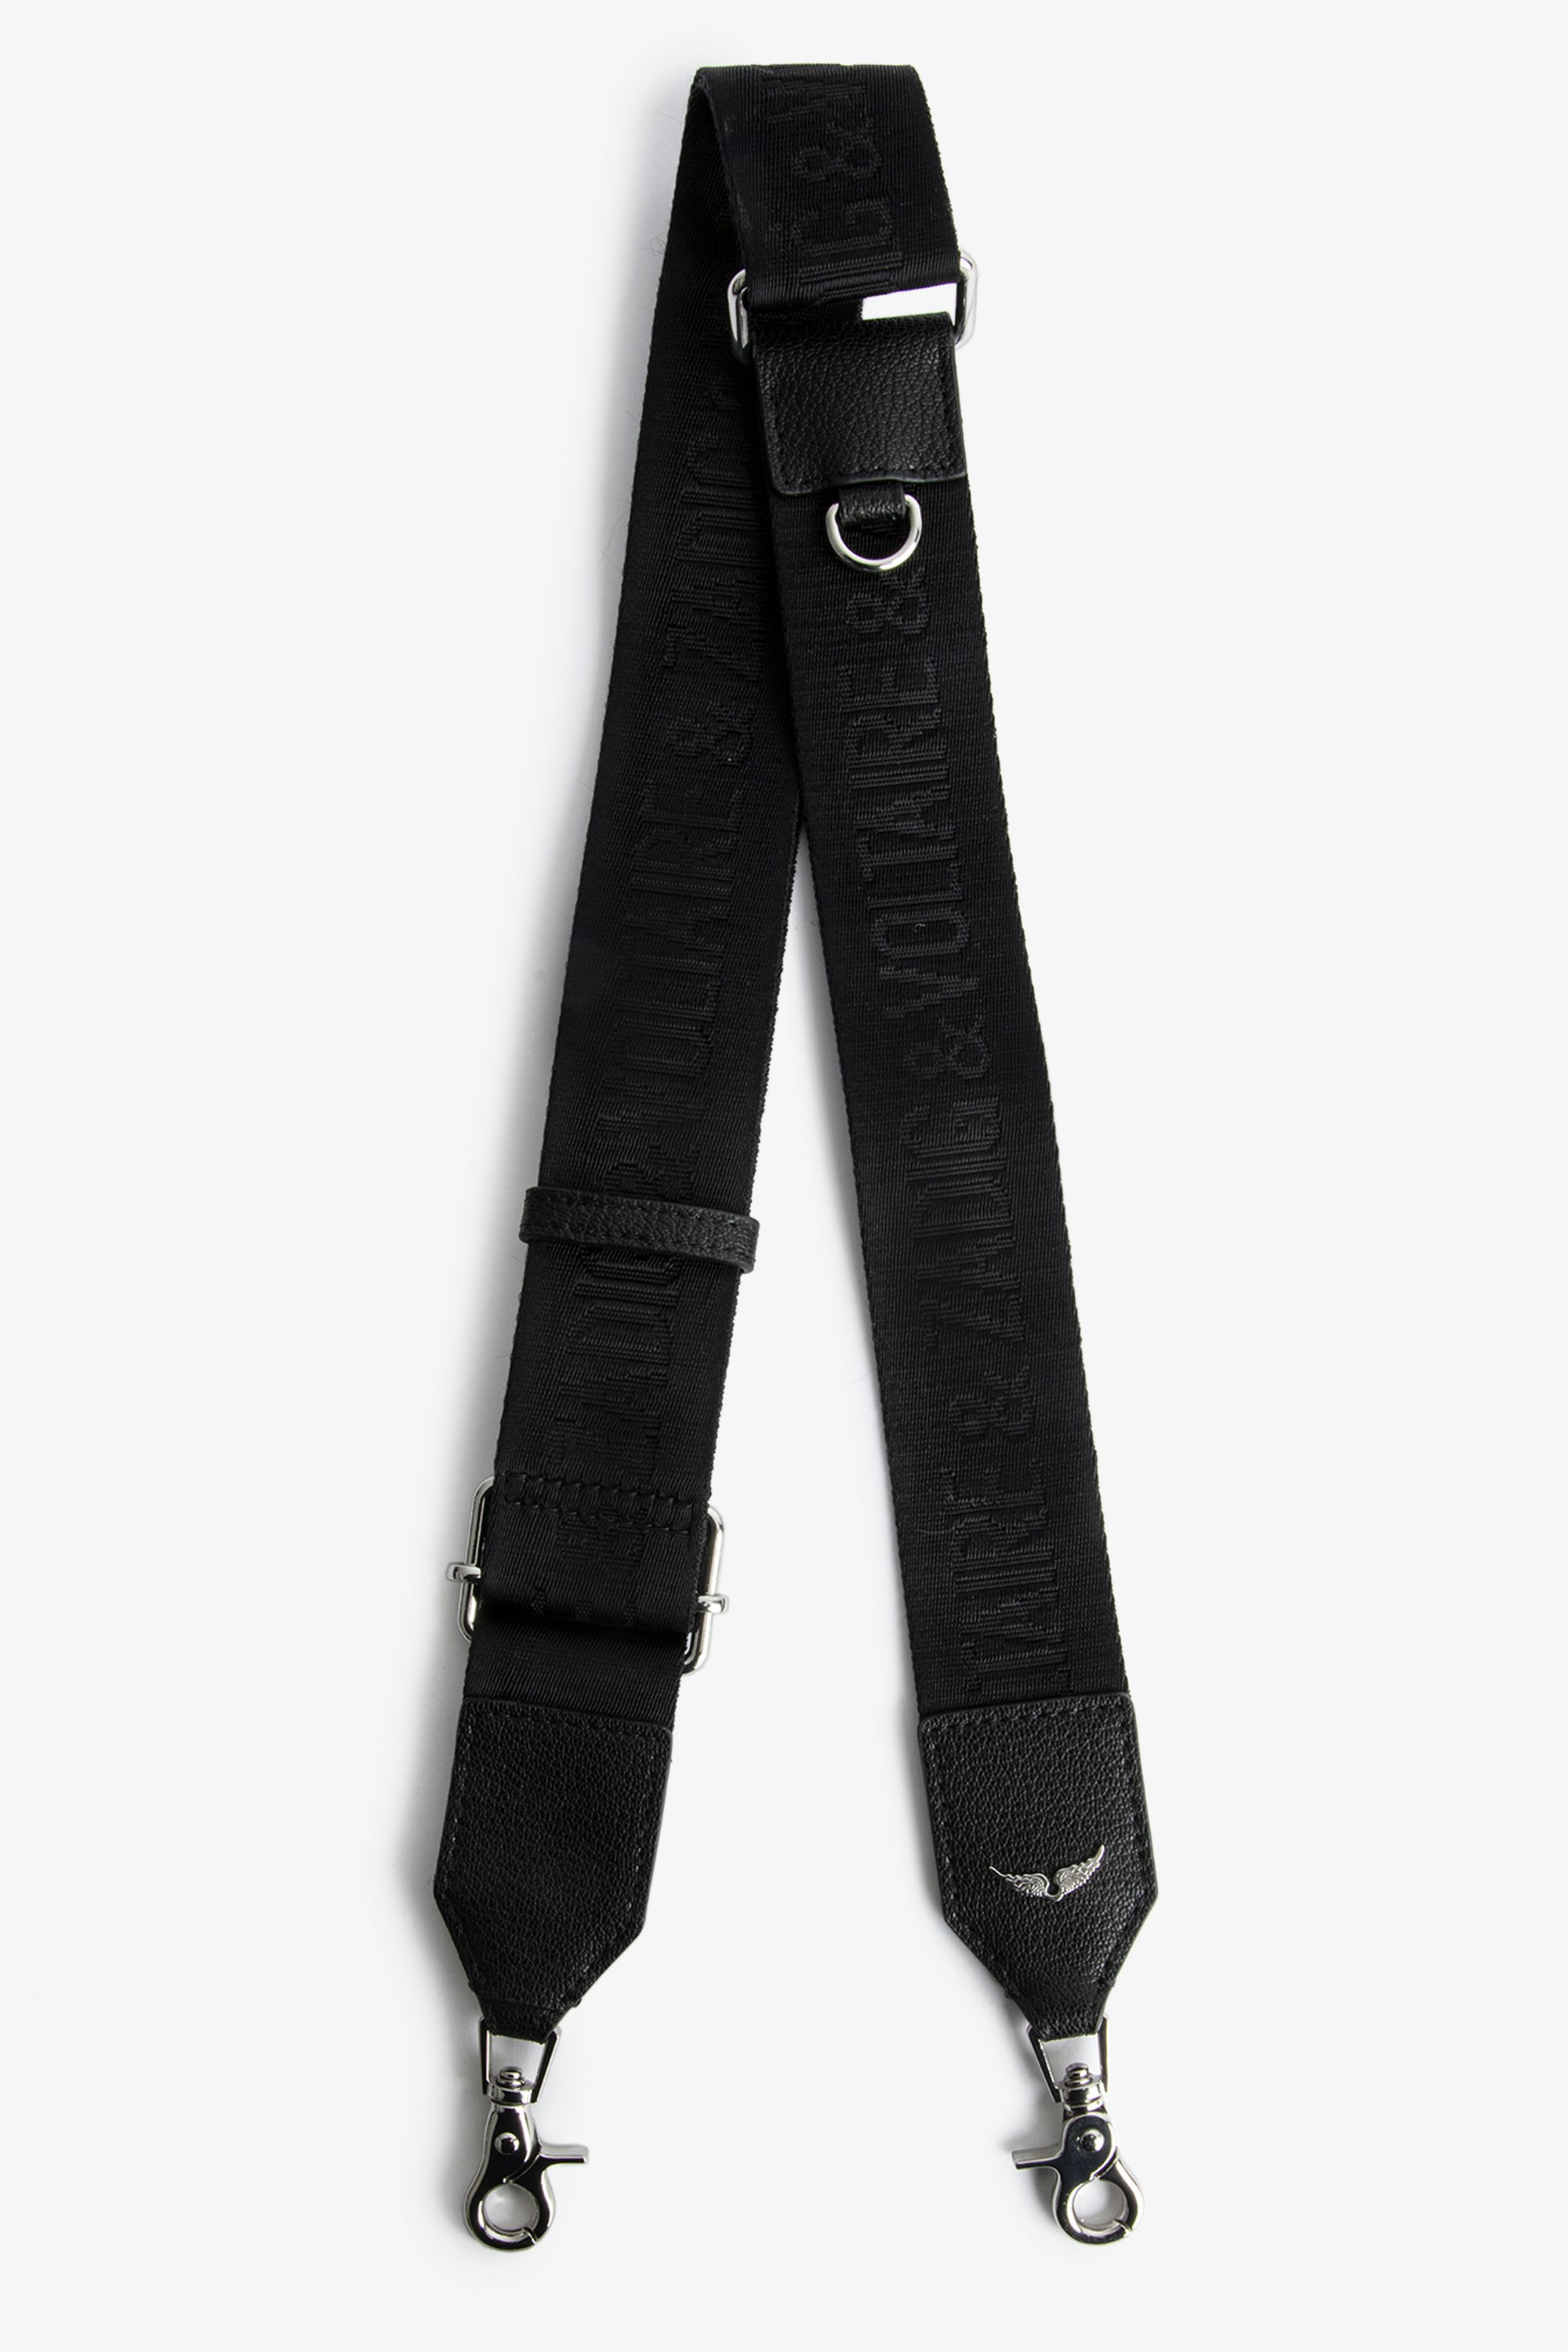 Zadig Shoulder Strap - Black leather shoulder strap.